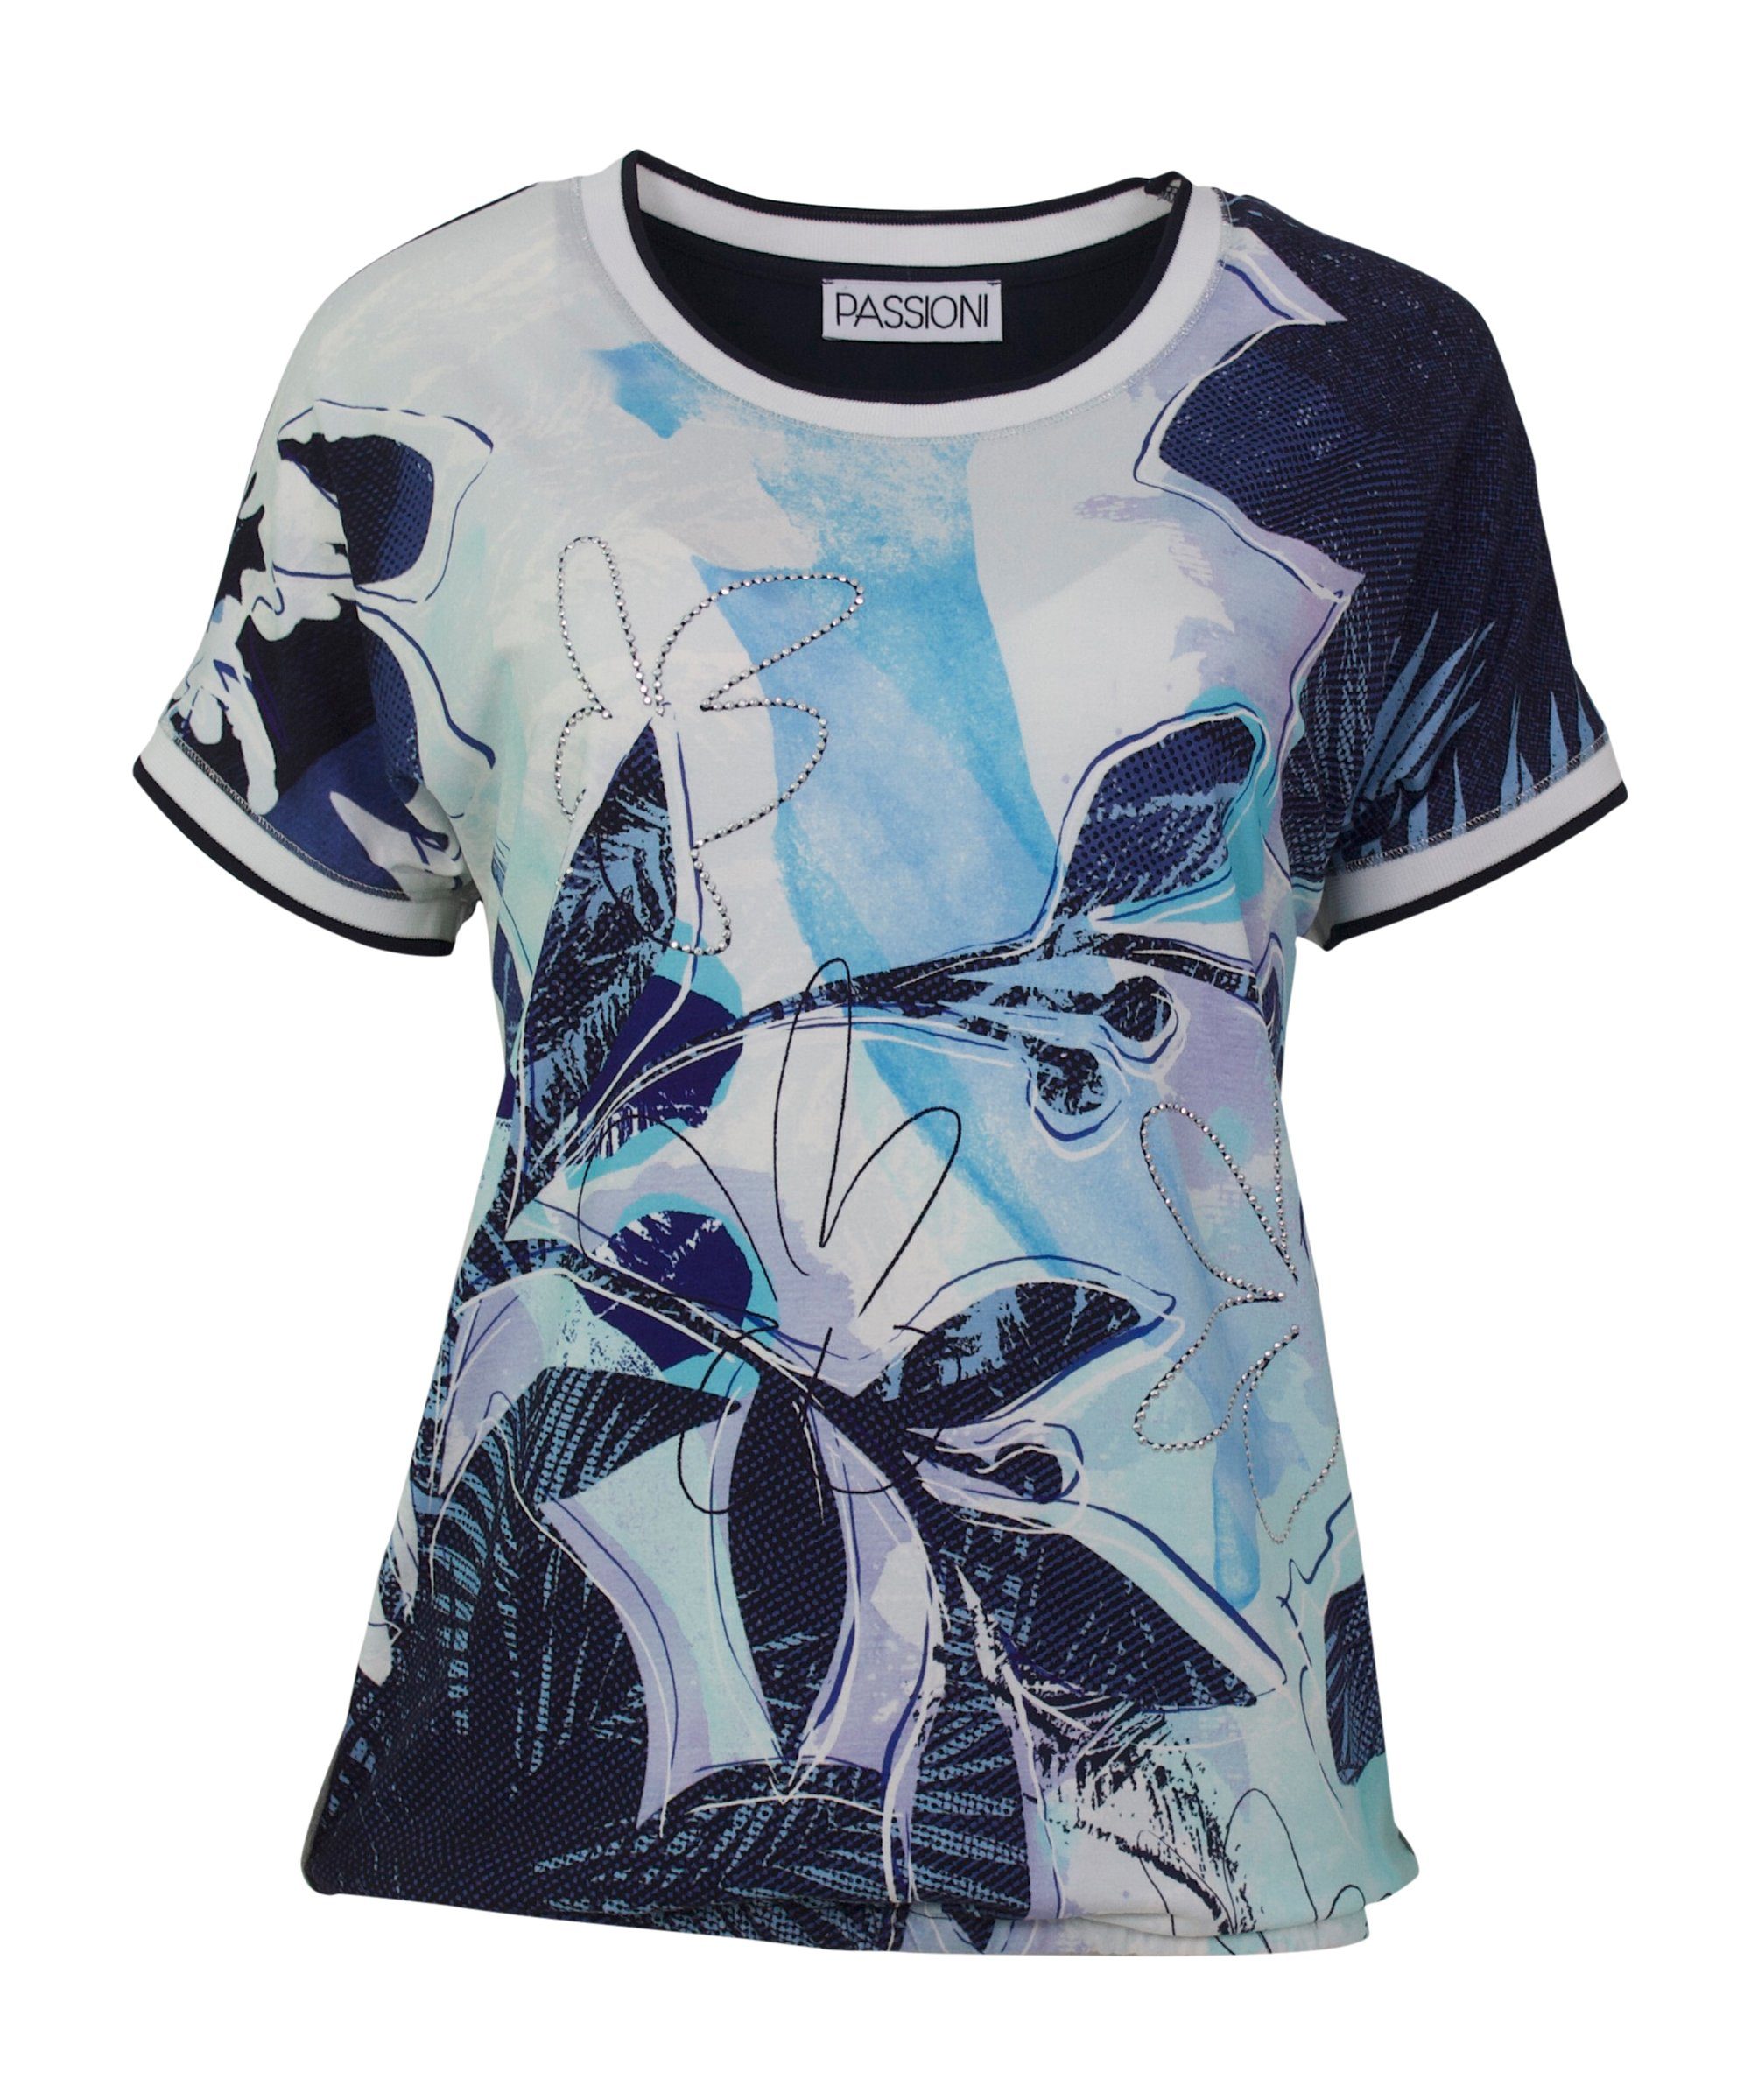 Passioni T-Shirt Bedrucktes T-Shirt sommerlichen Steindekoration, Print Hotfix, in Blautönen mit